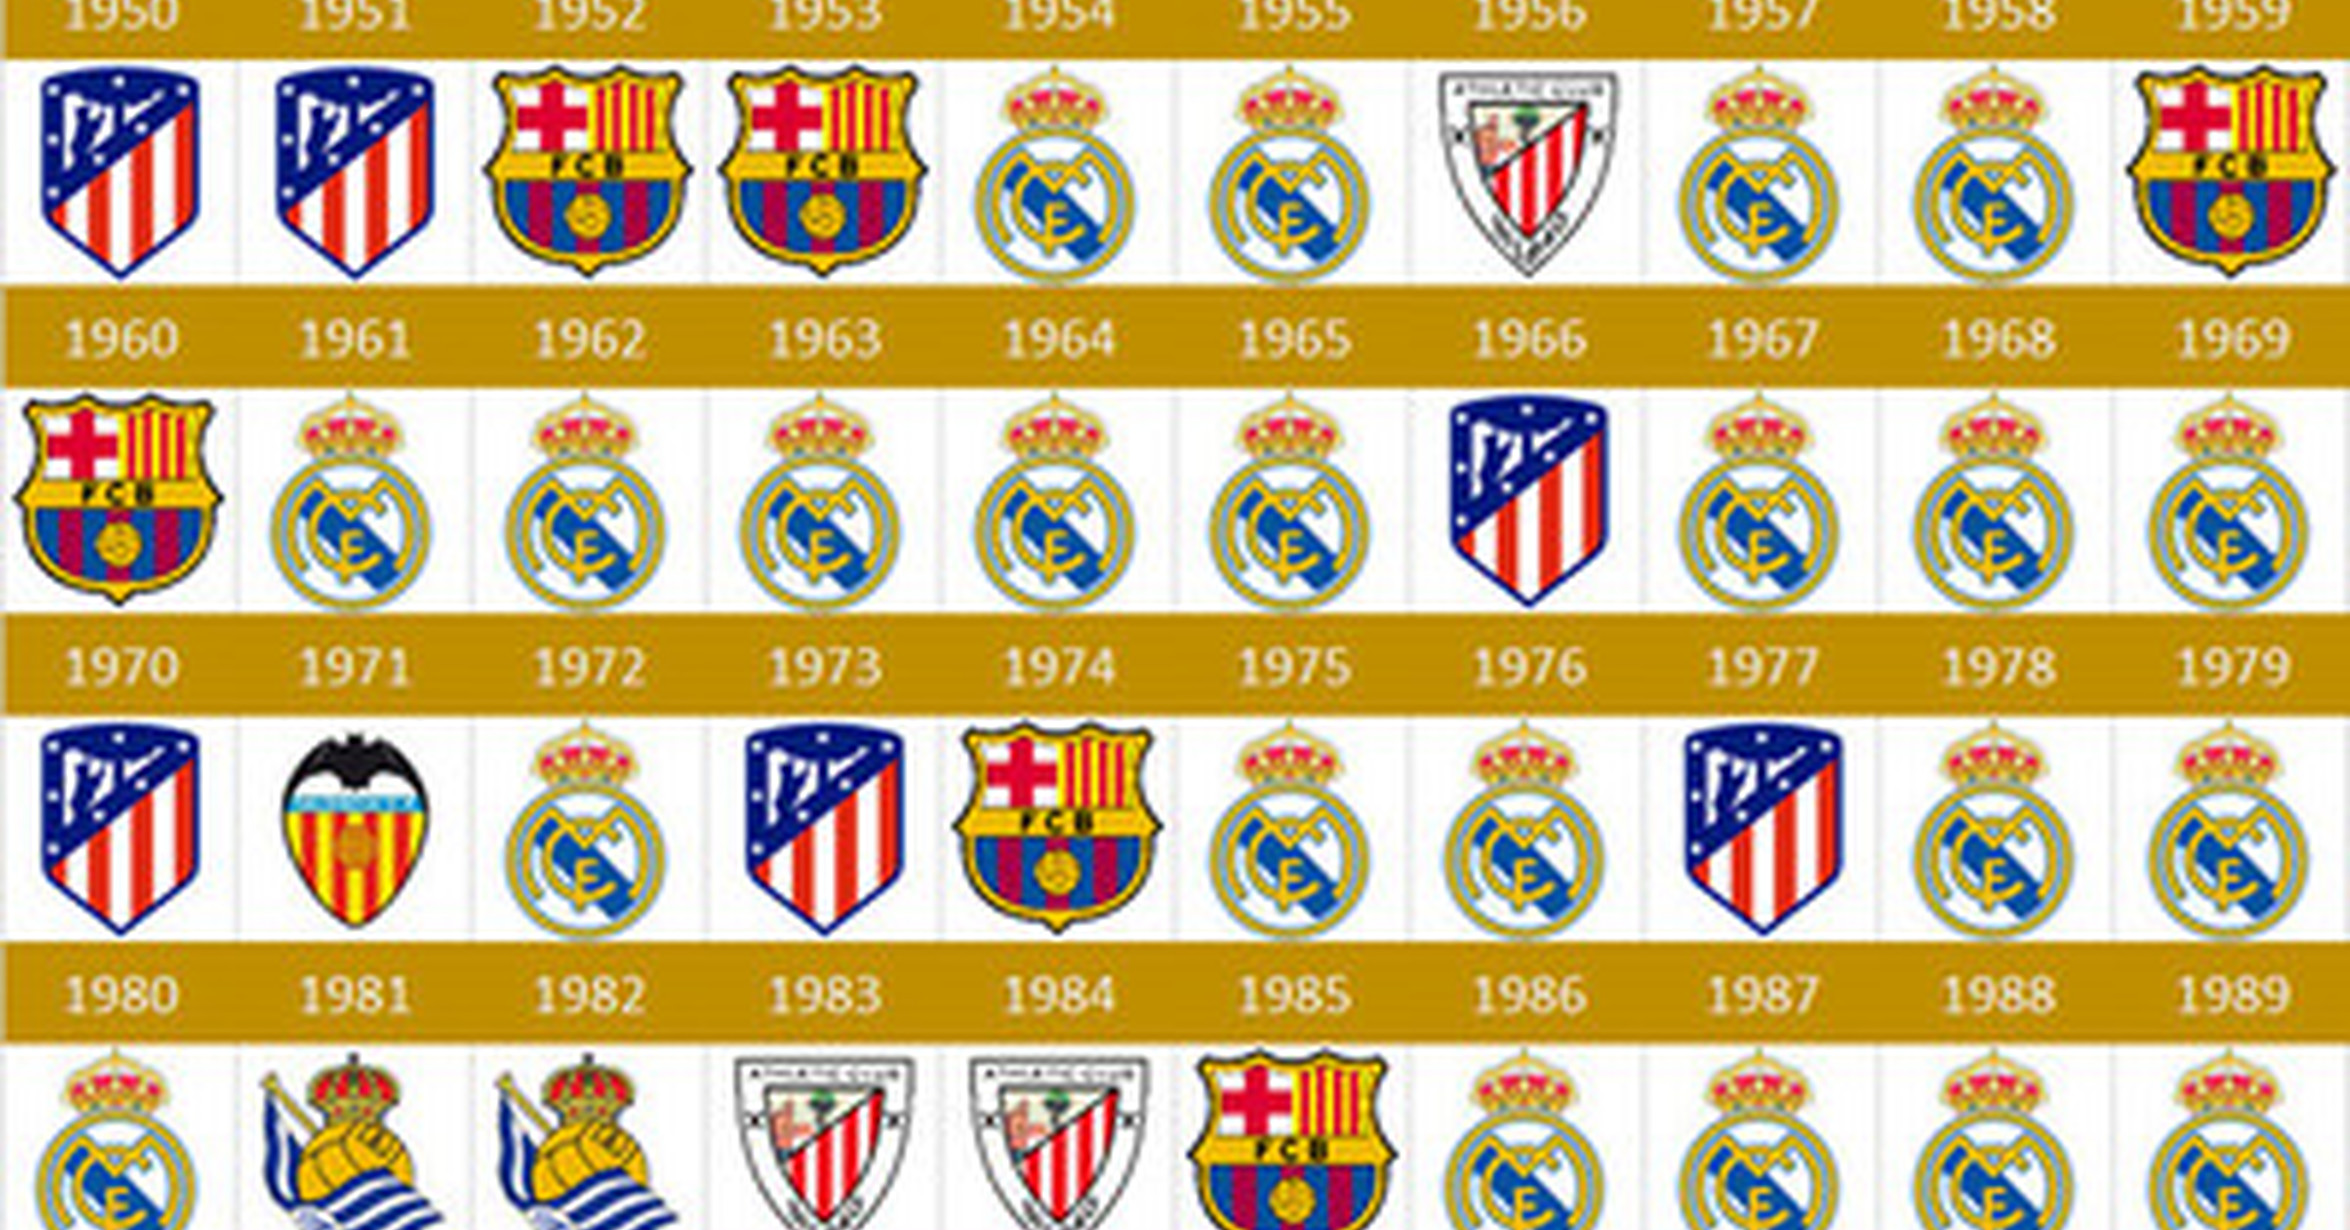 Campeones de liga españa historia